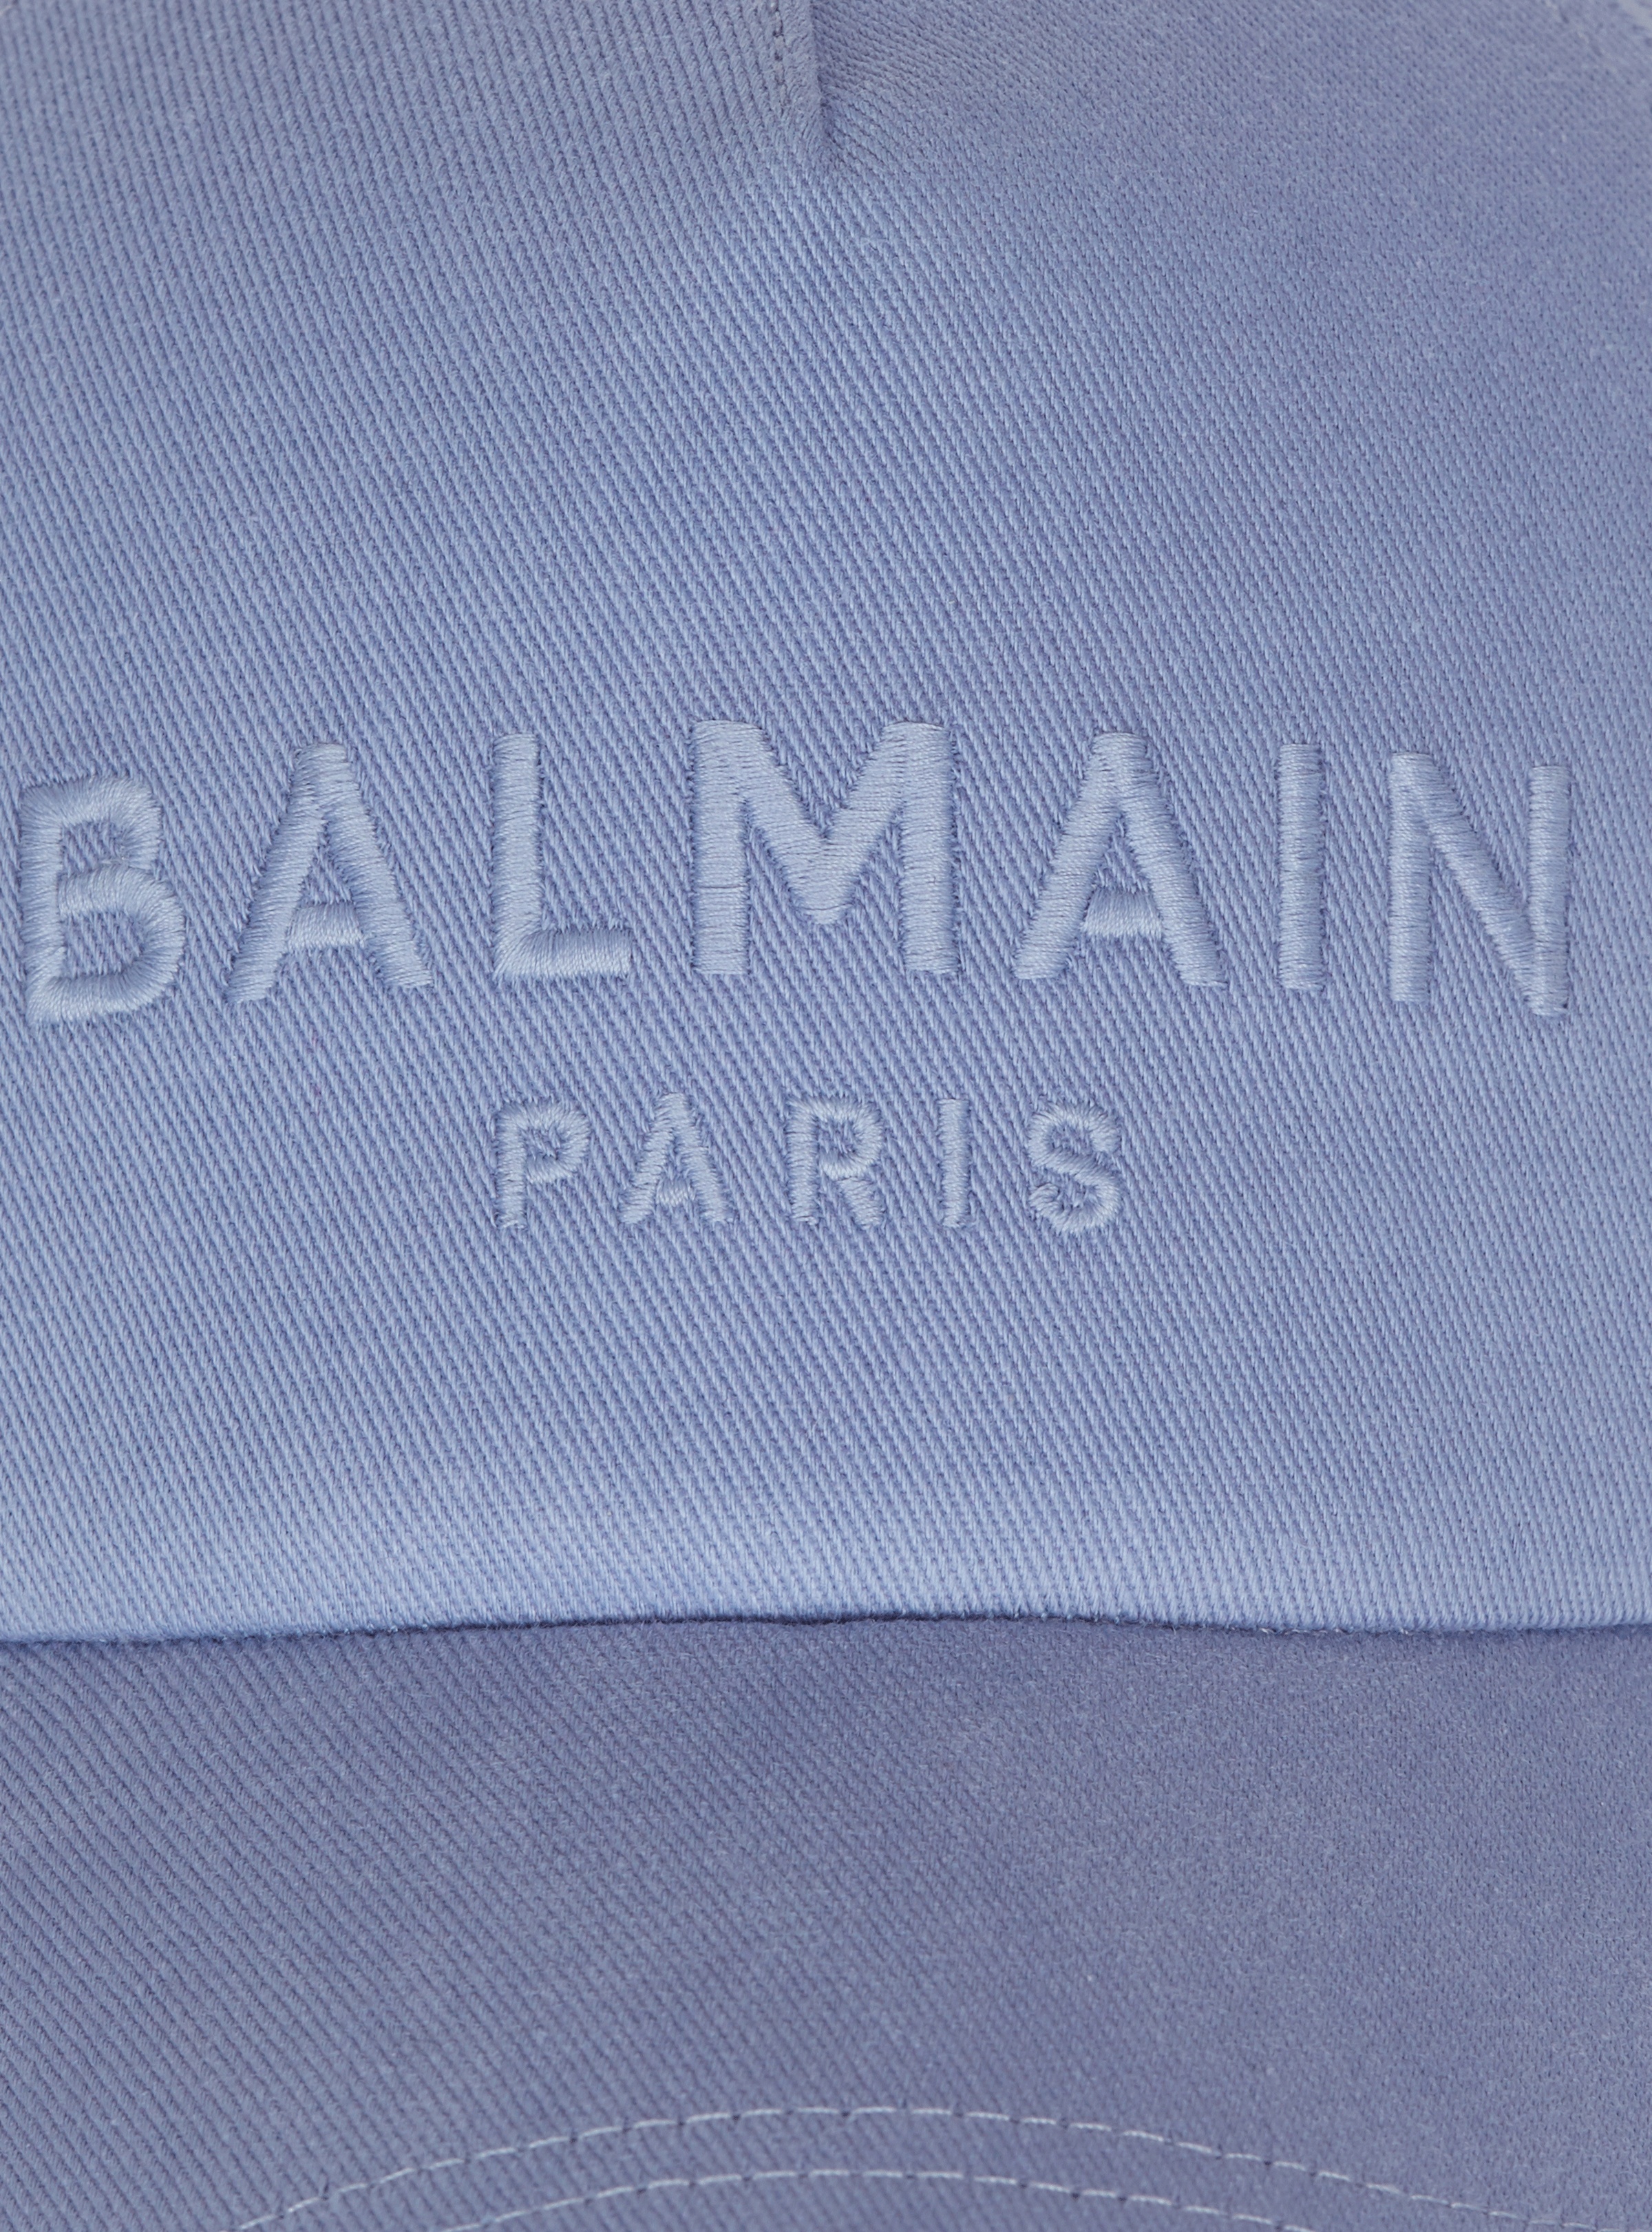 Embroidered Balmain Paris cap - 5